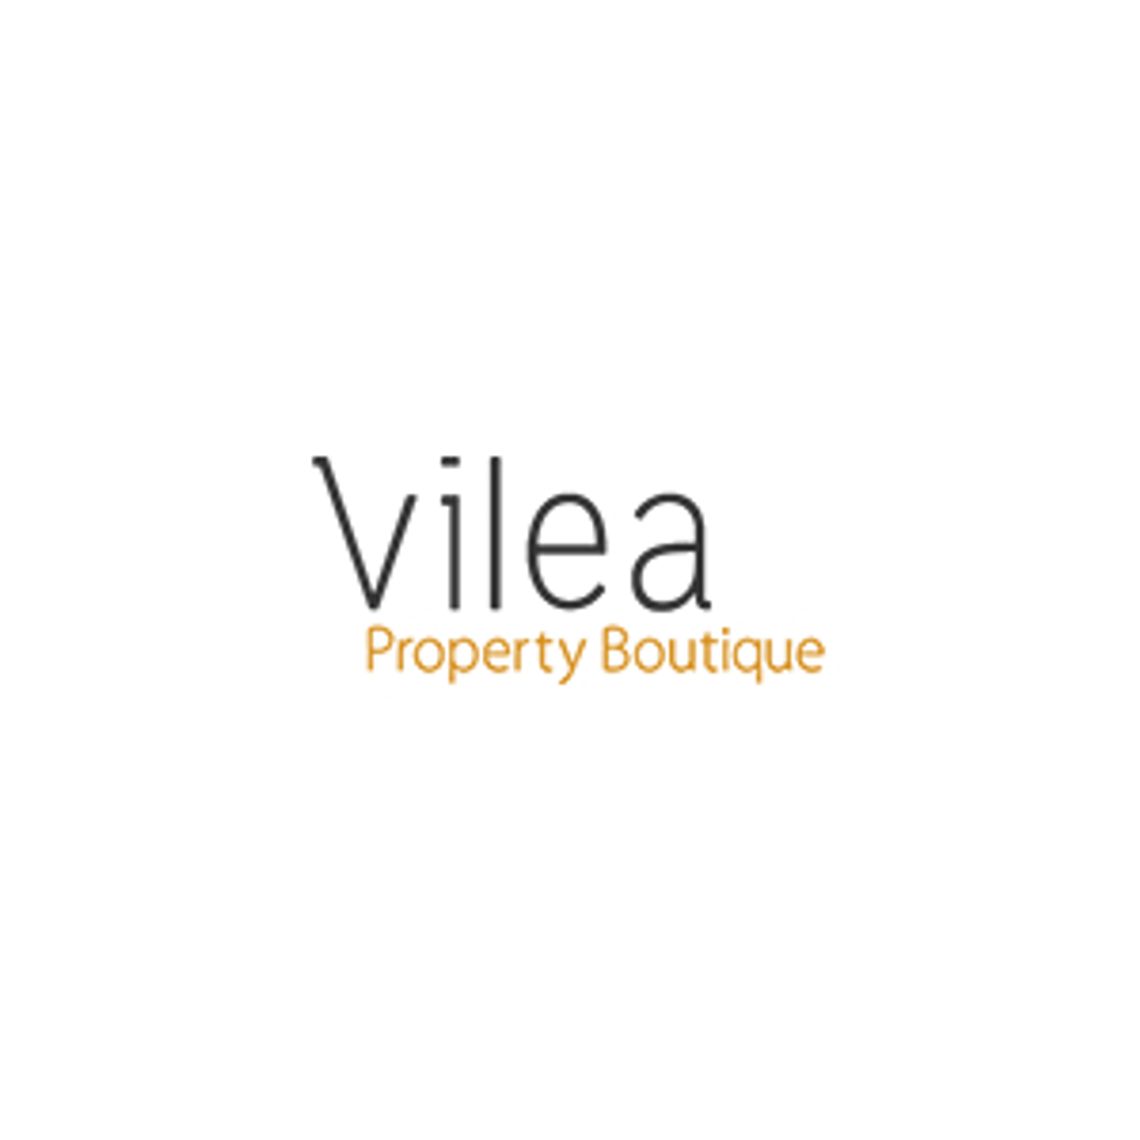 Luksusowe apartamenty na sprzedaż - Vilea